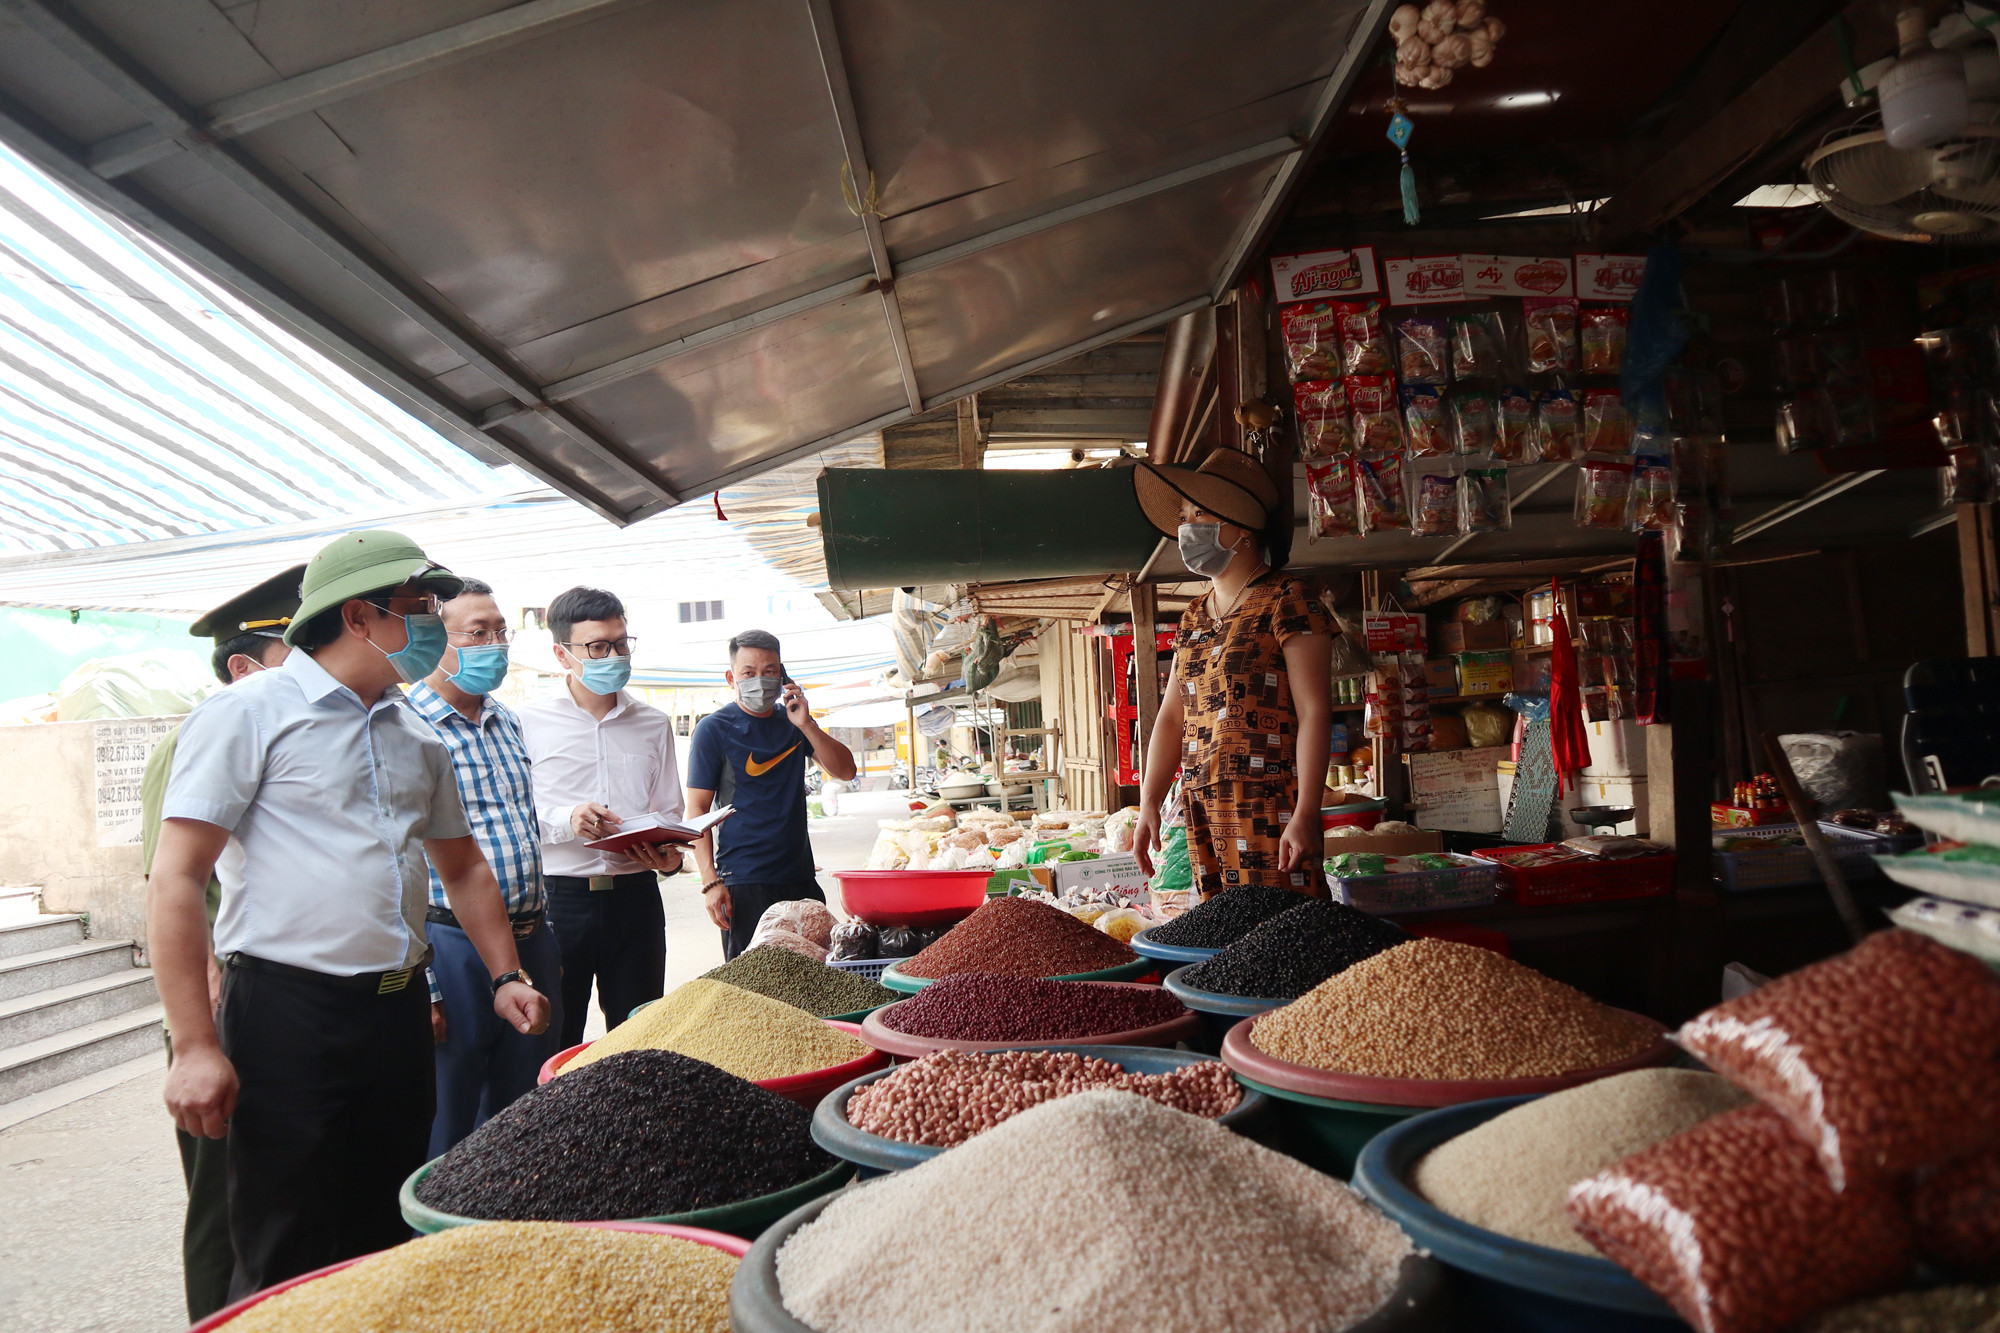 Tại chợ Vinh, nguồn cung lương thực dồi dào, lượng người mua không nhiều biến động. Ảnh: Thanh Phúc